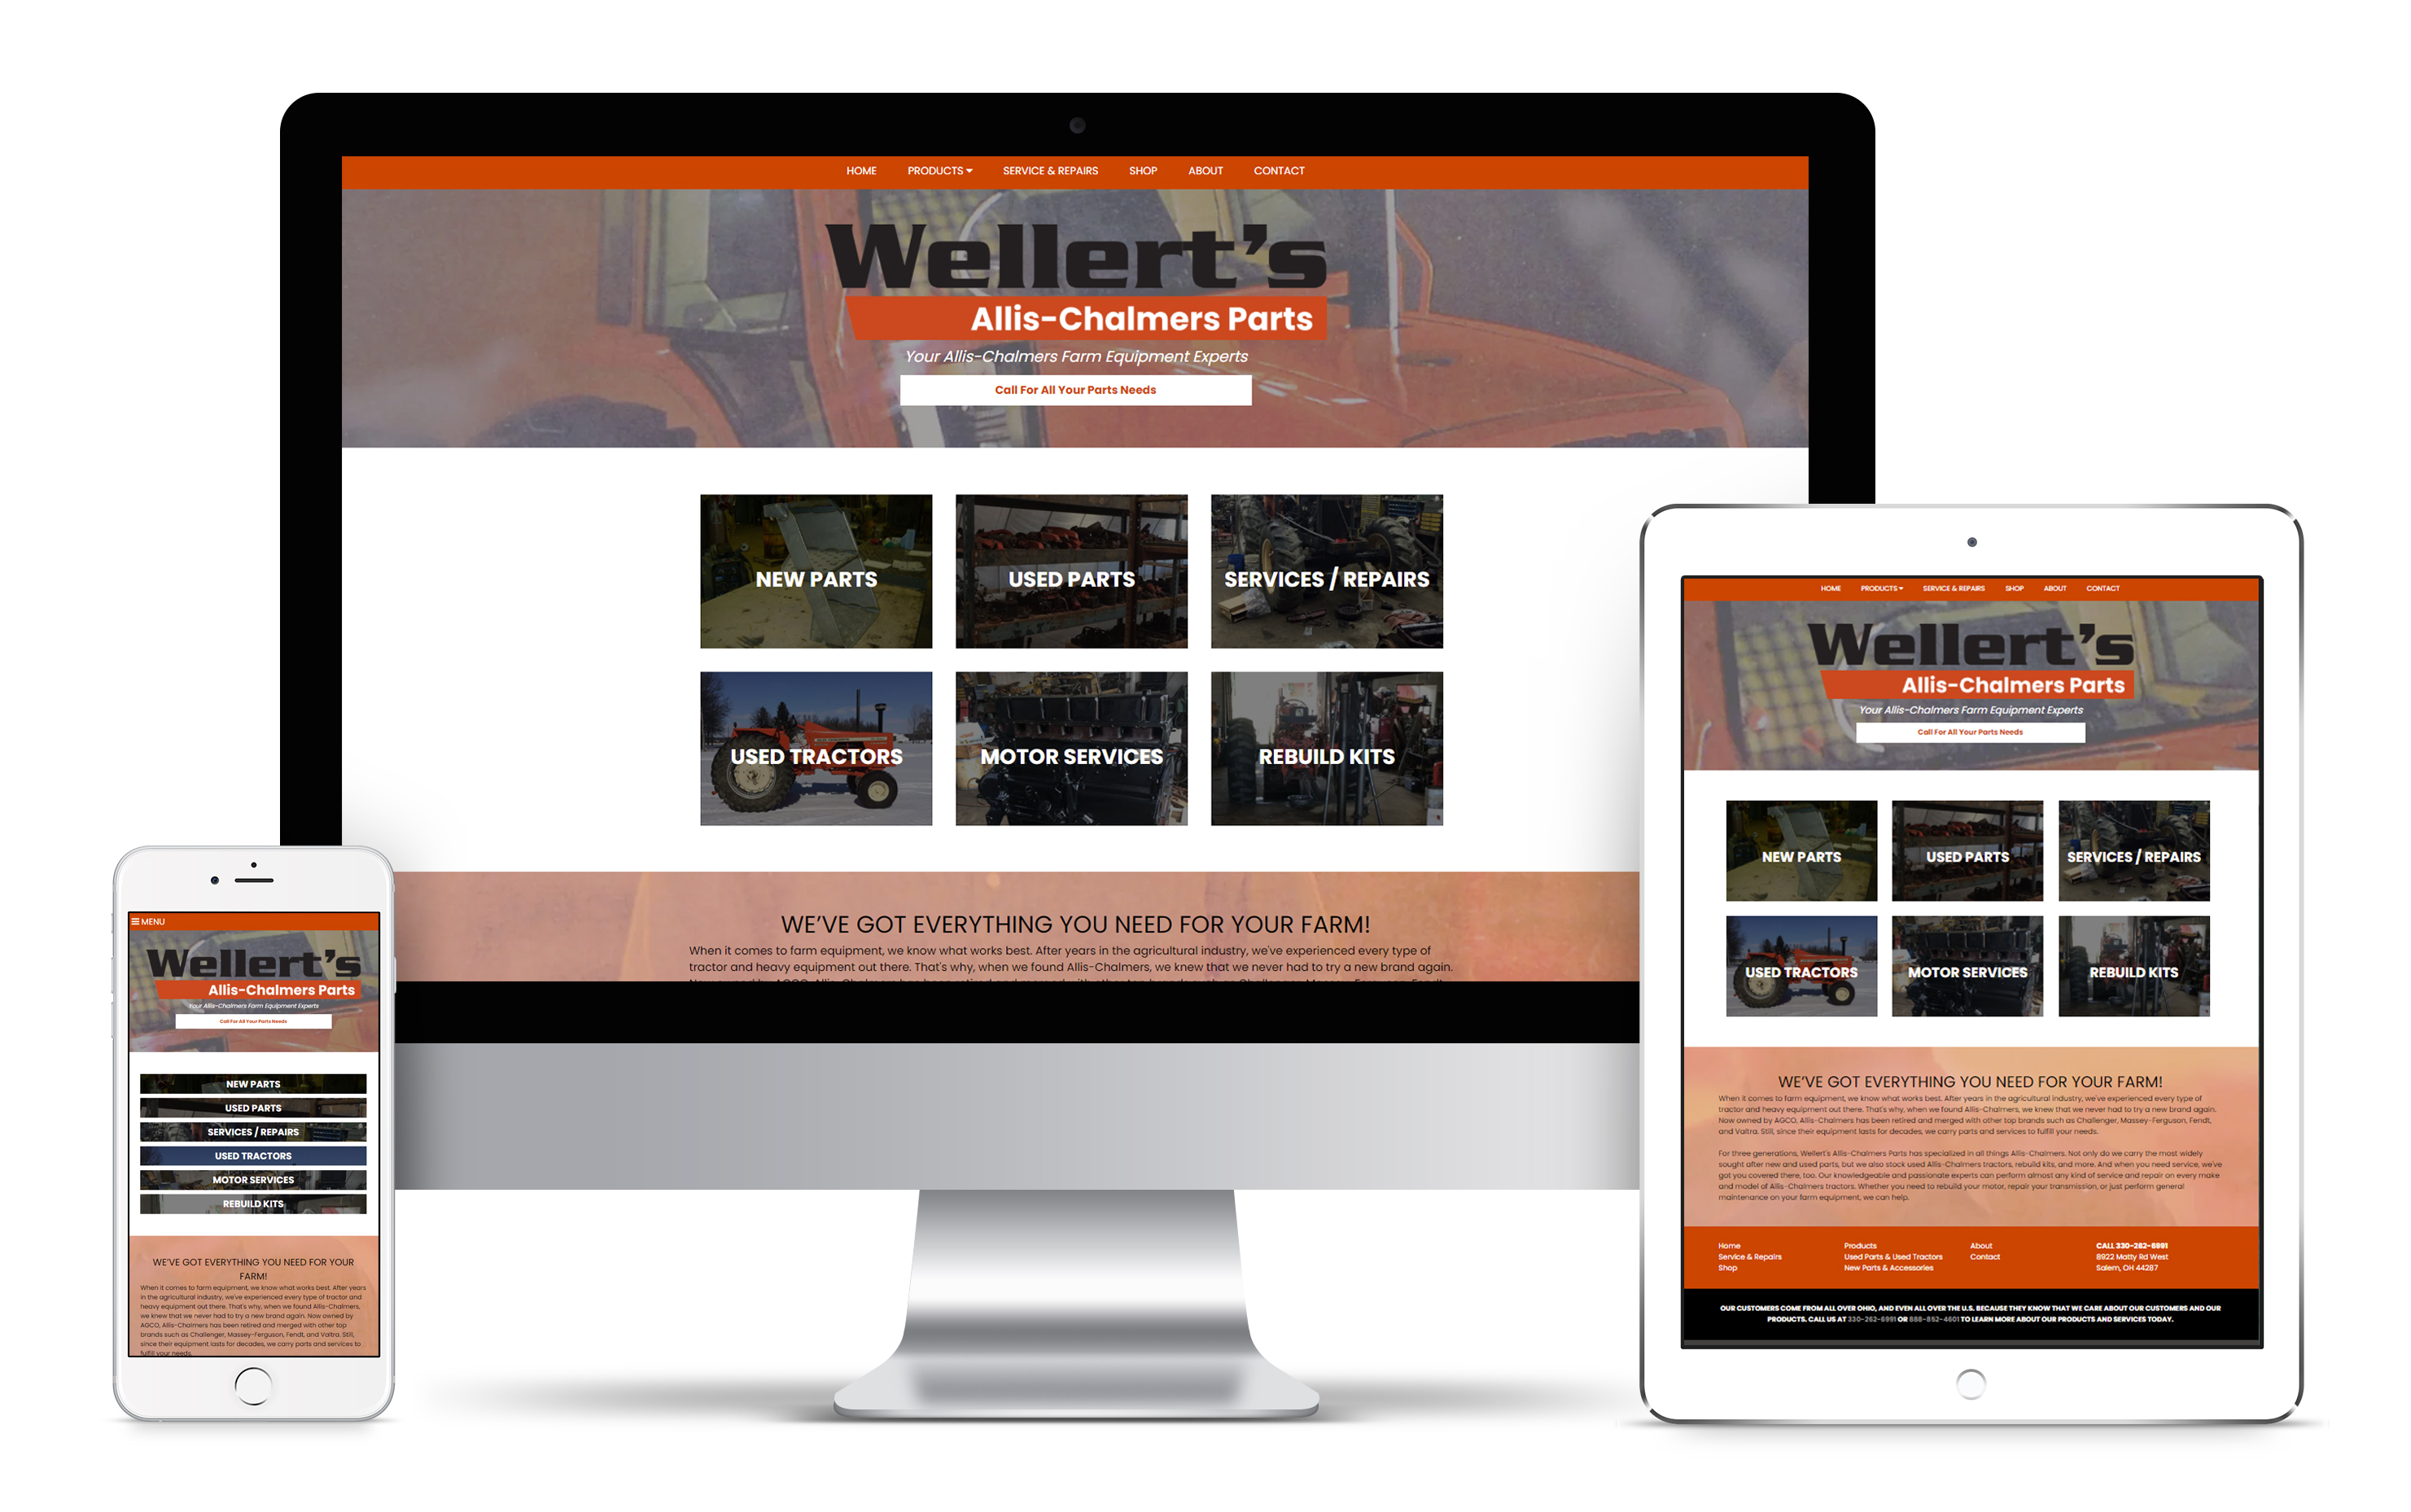  Wellert's Allis-Chalmers Parts Web Design Work